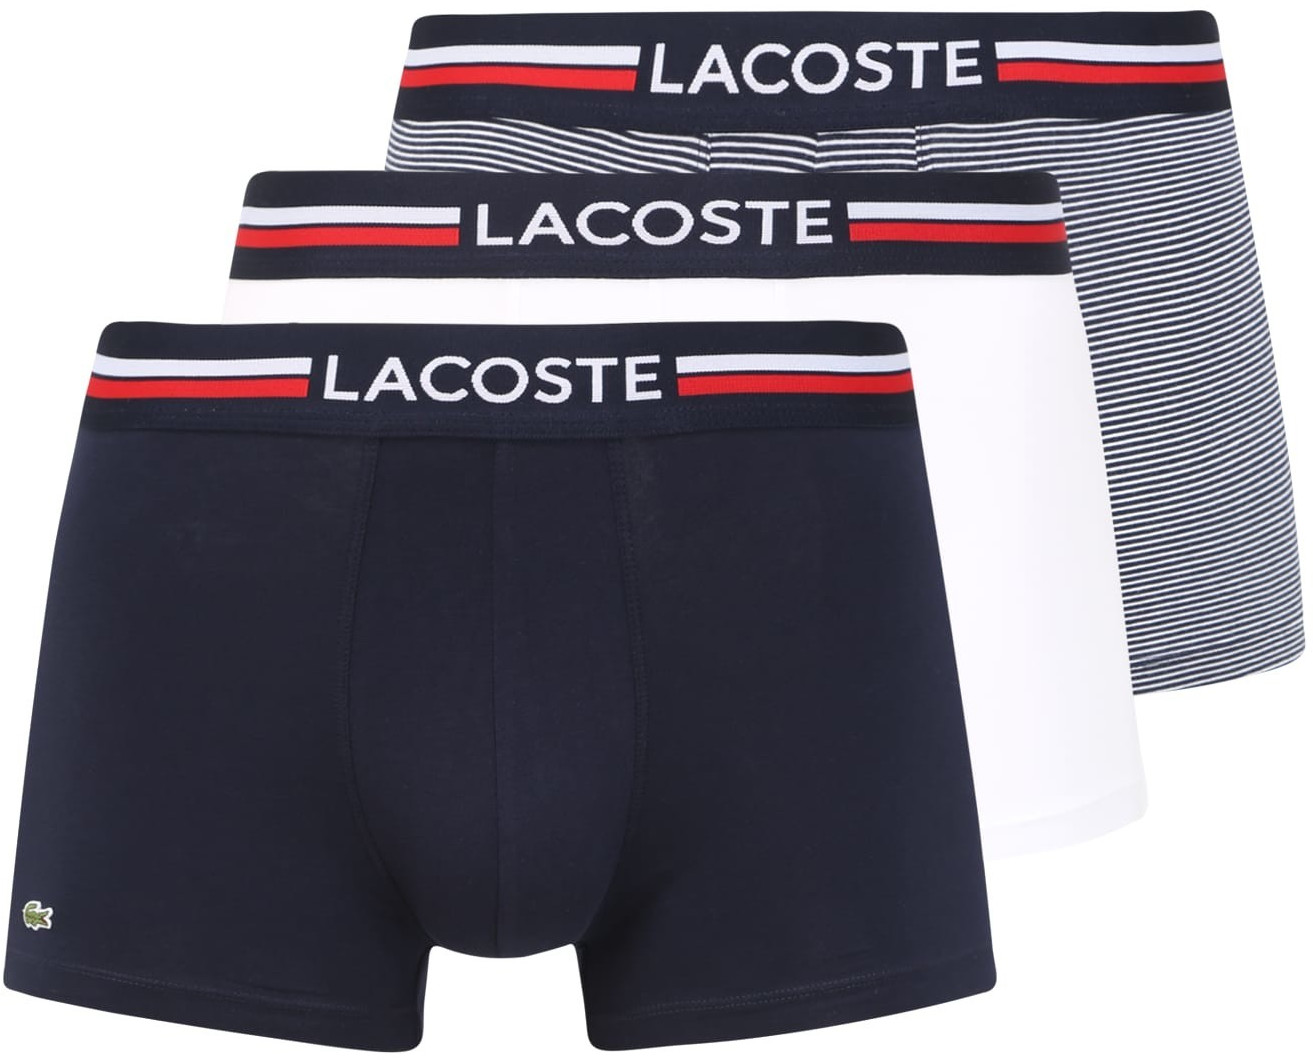 Lacoste Underwear Triple Pack Boxer Trunks